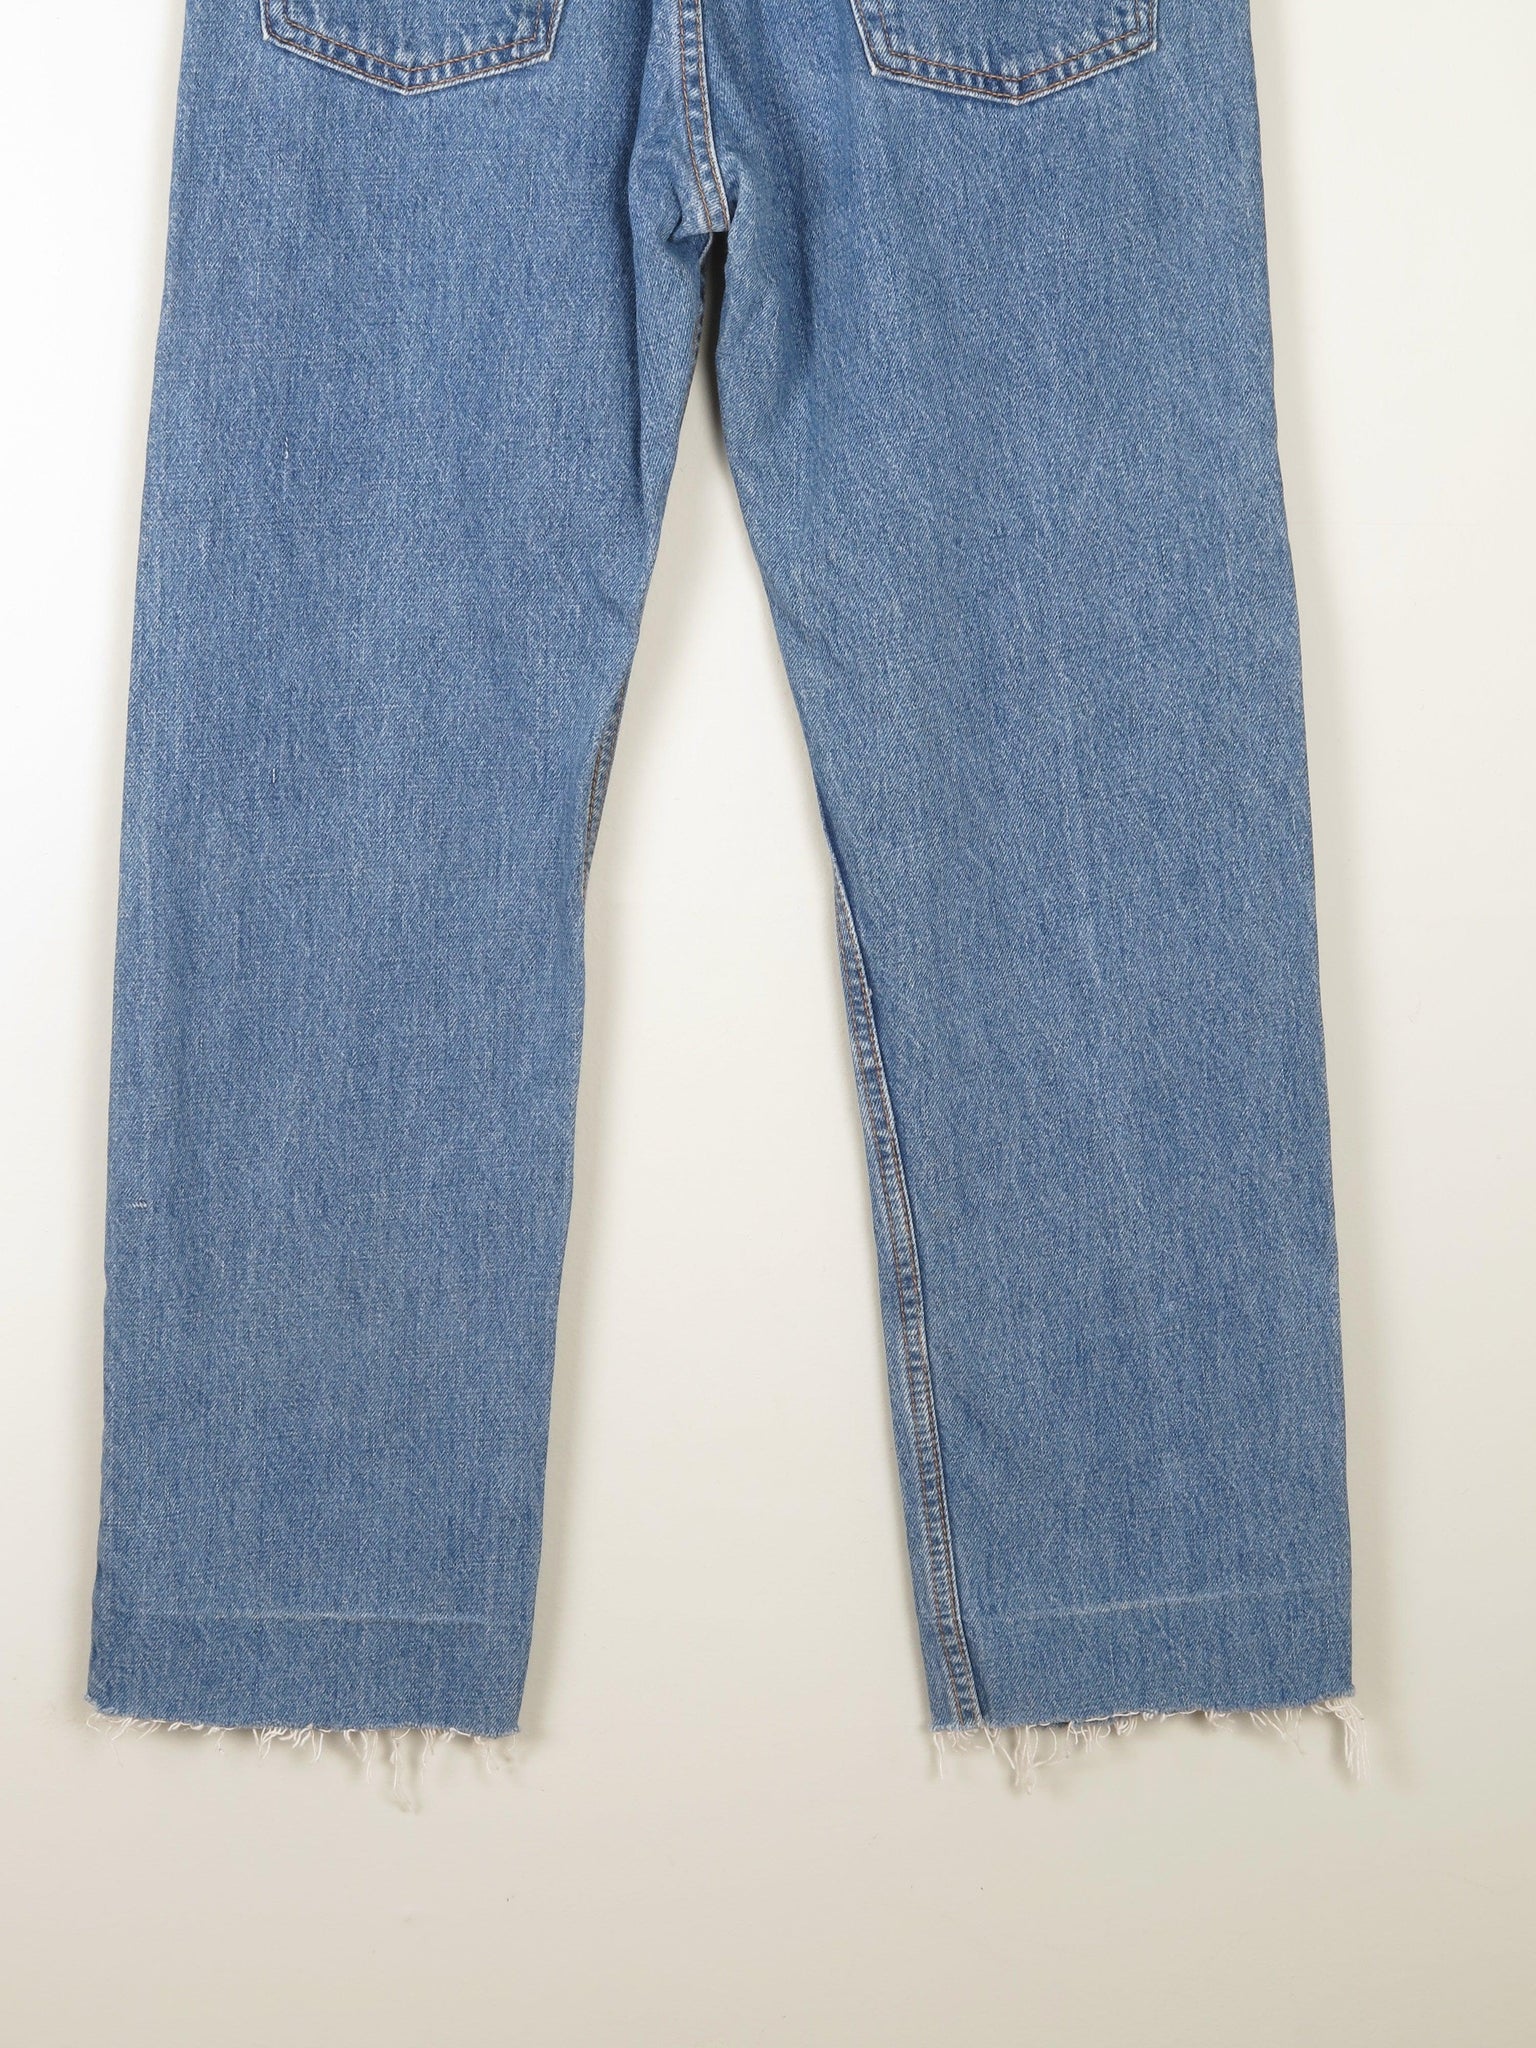 Men's Blue Vintage Levi's 505 Denim Jeans 31" - The Harlequin